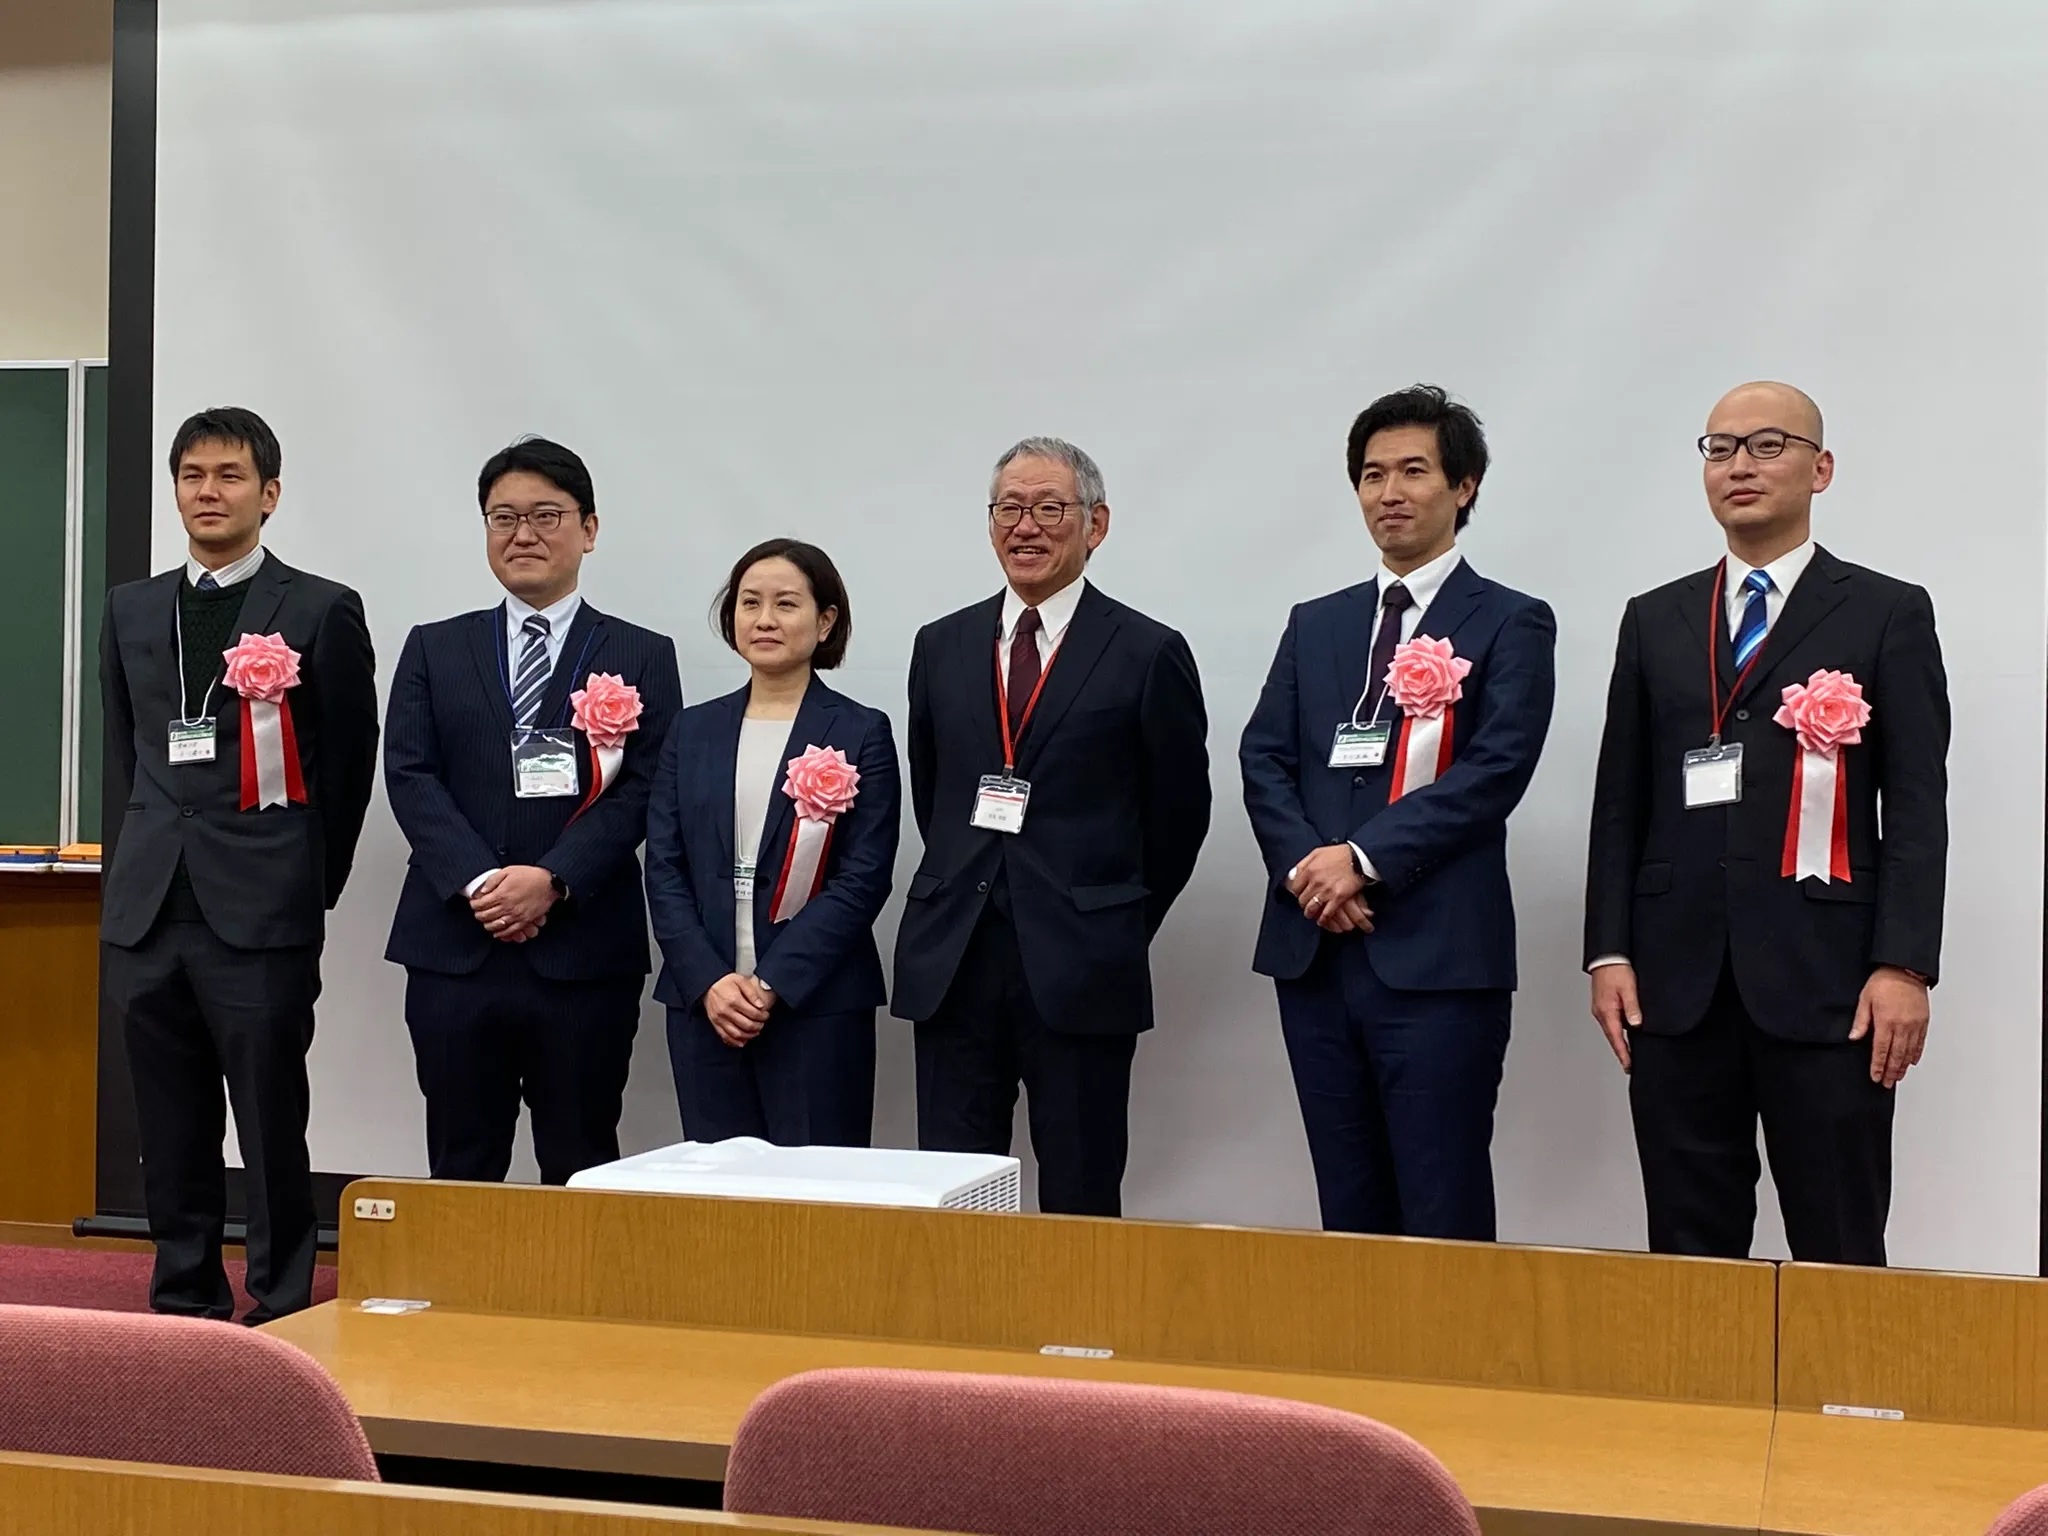 中村講師、月川講師が薬学会九州山口支部奨励賞を受賞